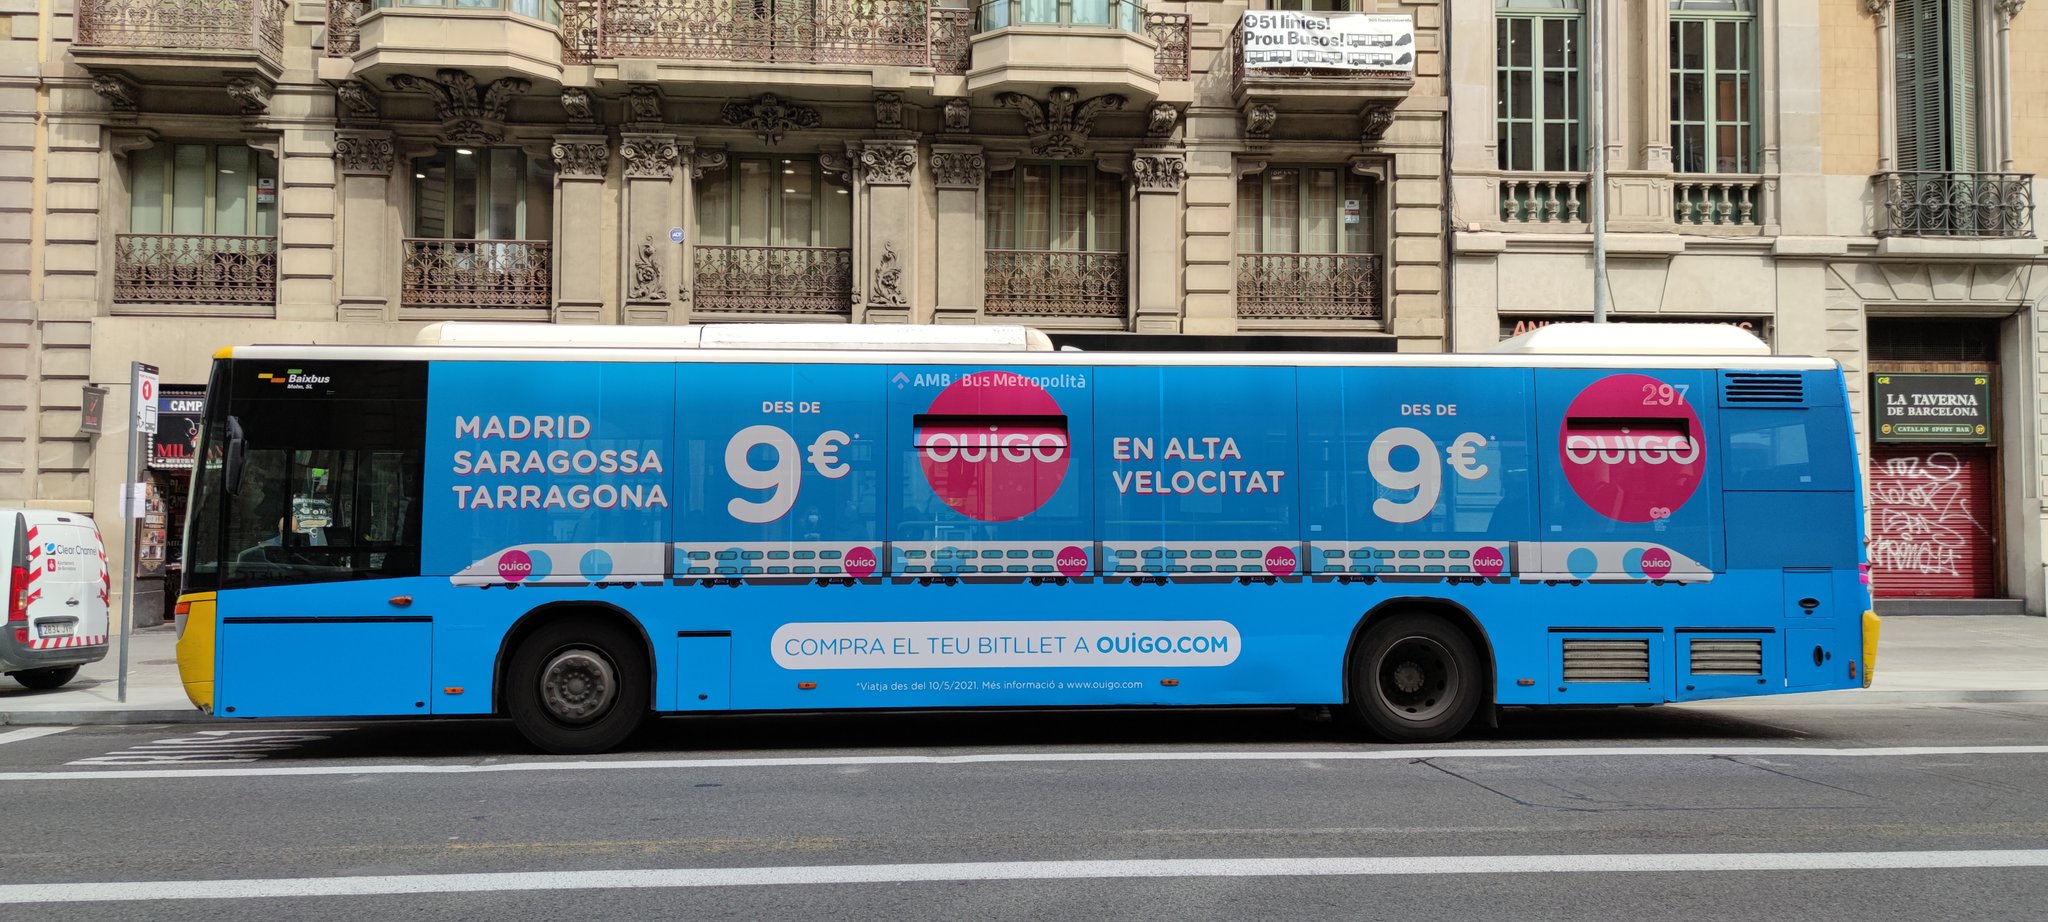 Enrique Cepeda Gonzalez on X: Llegan a Barcelona los primeros Autobuses  con matrícula iniciada por la letra L. Los primeros son de #autocorb y  #monbus.  / X